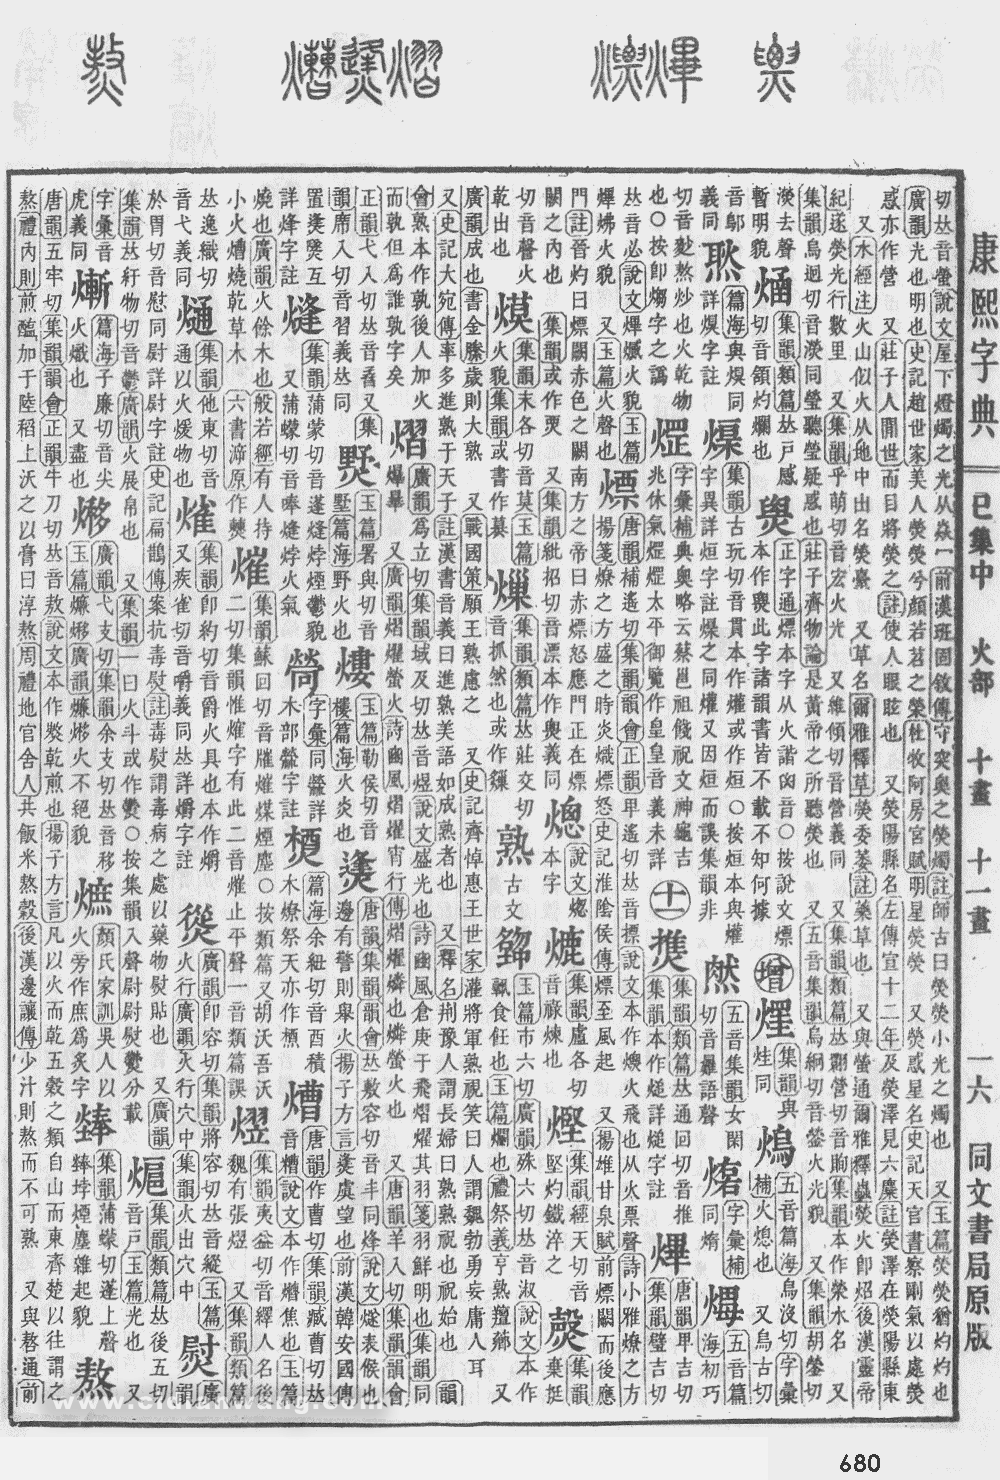 康熙字典掃描版第680頁